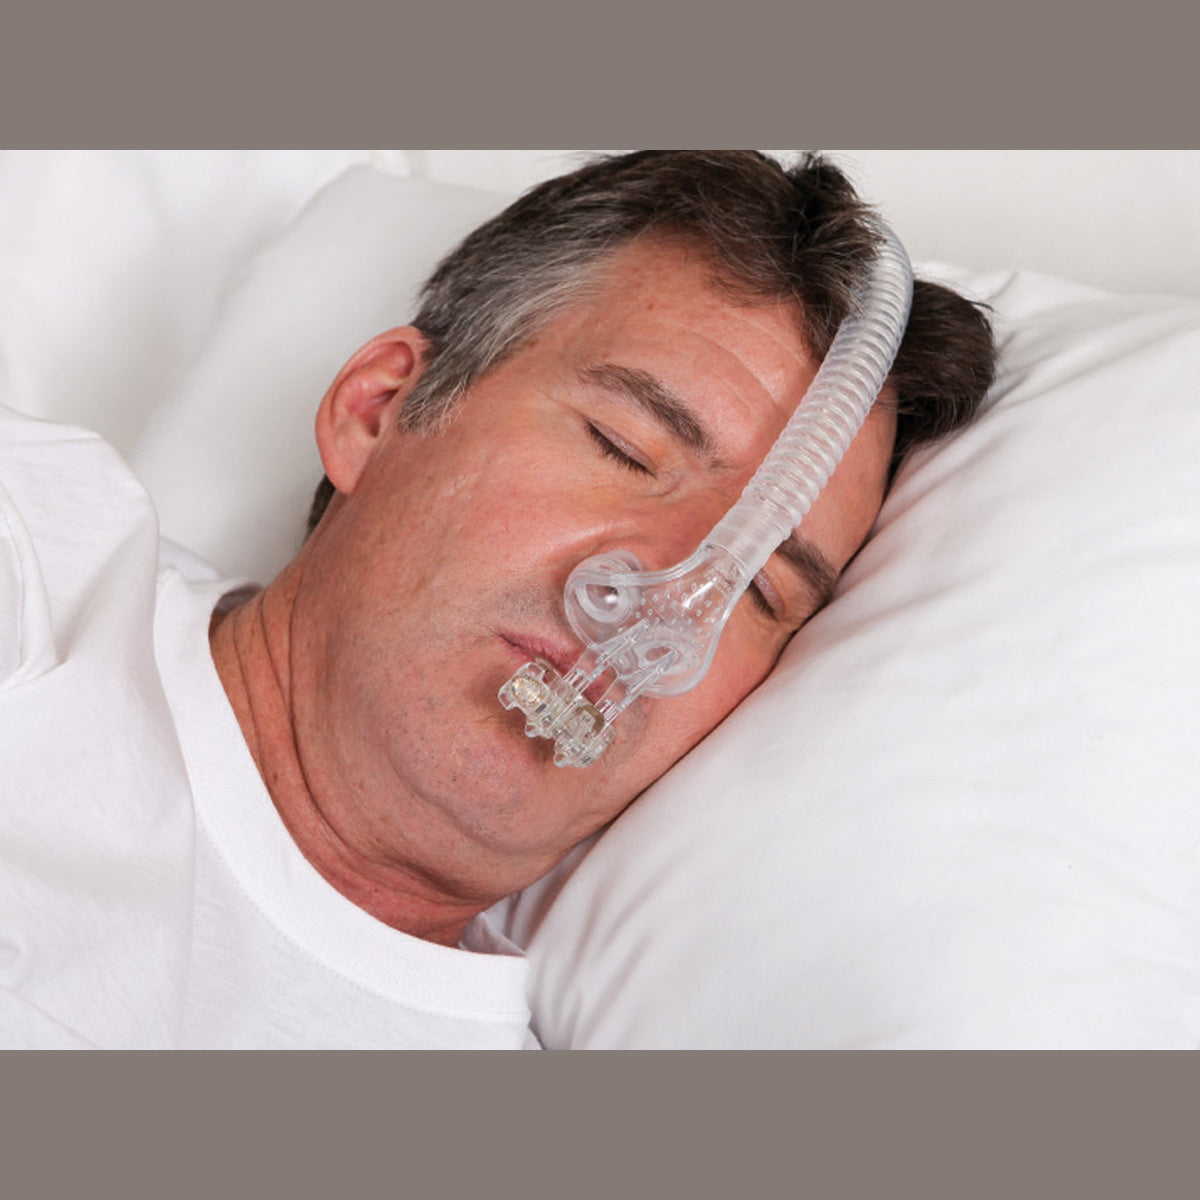 TAP PAP Nasal Pillow CPAP/BiPAP Mask Setup Pack